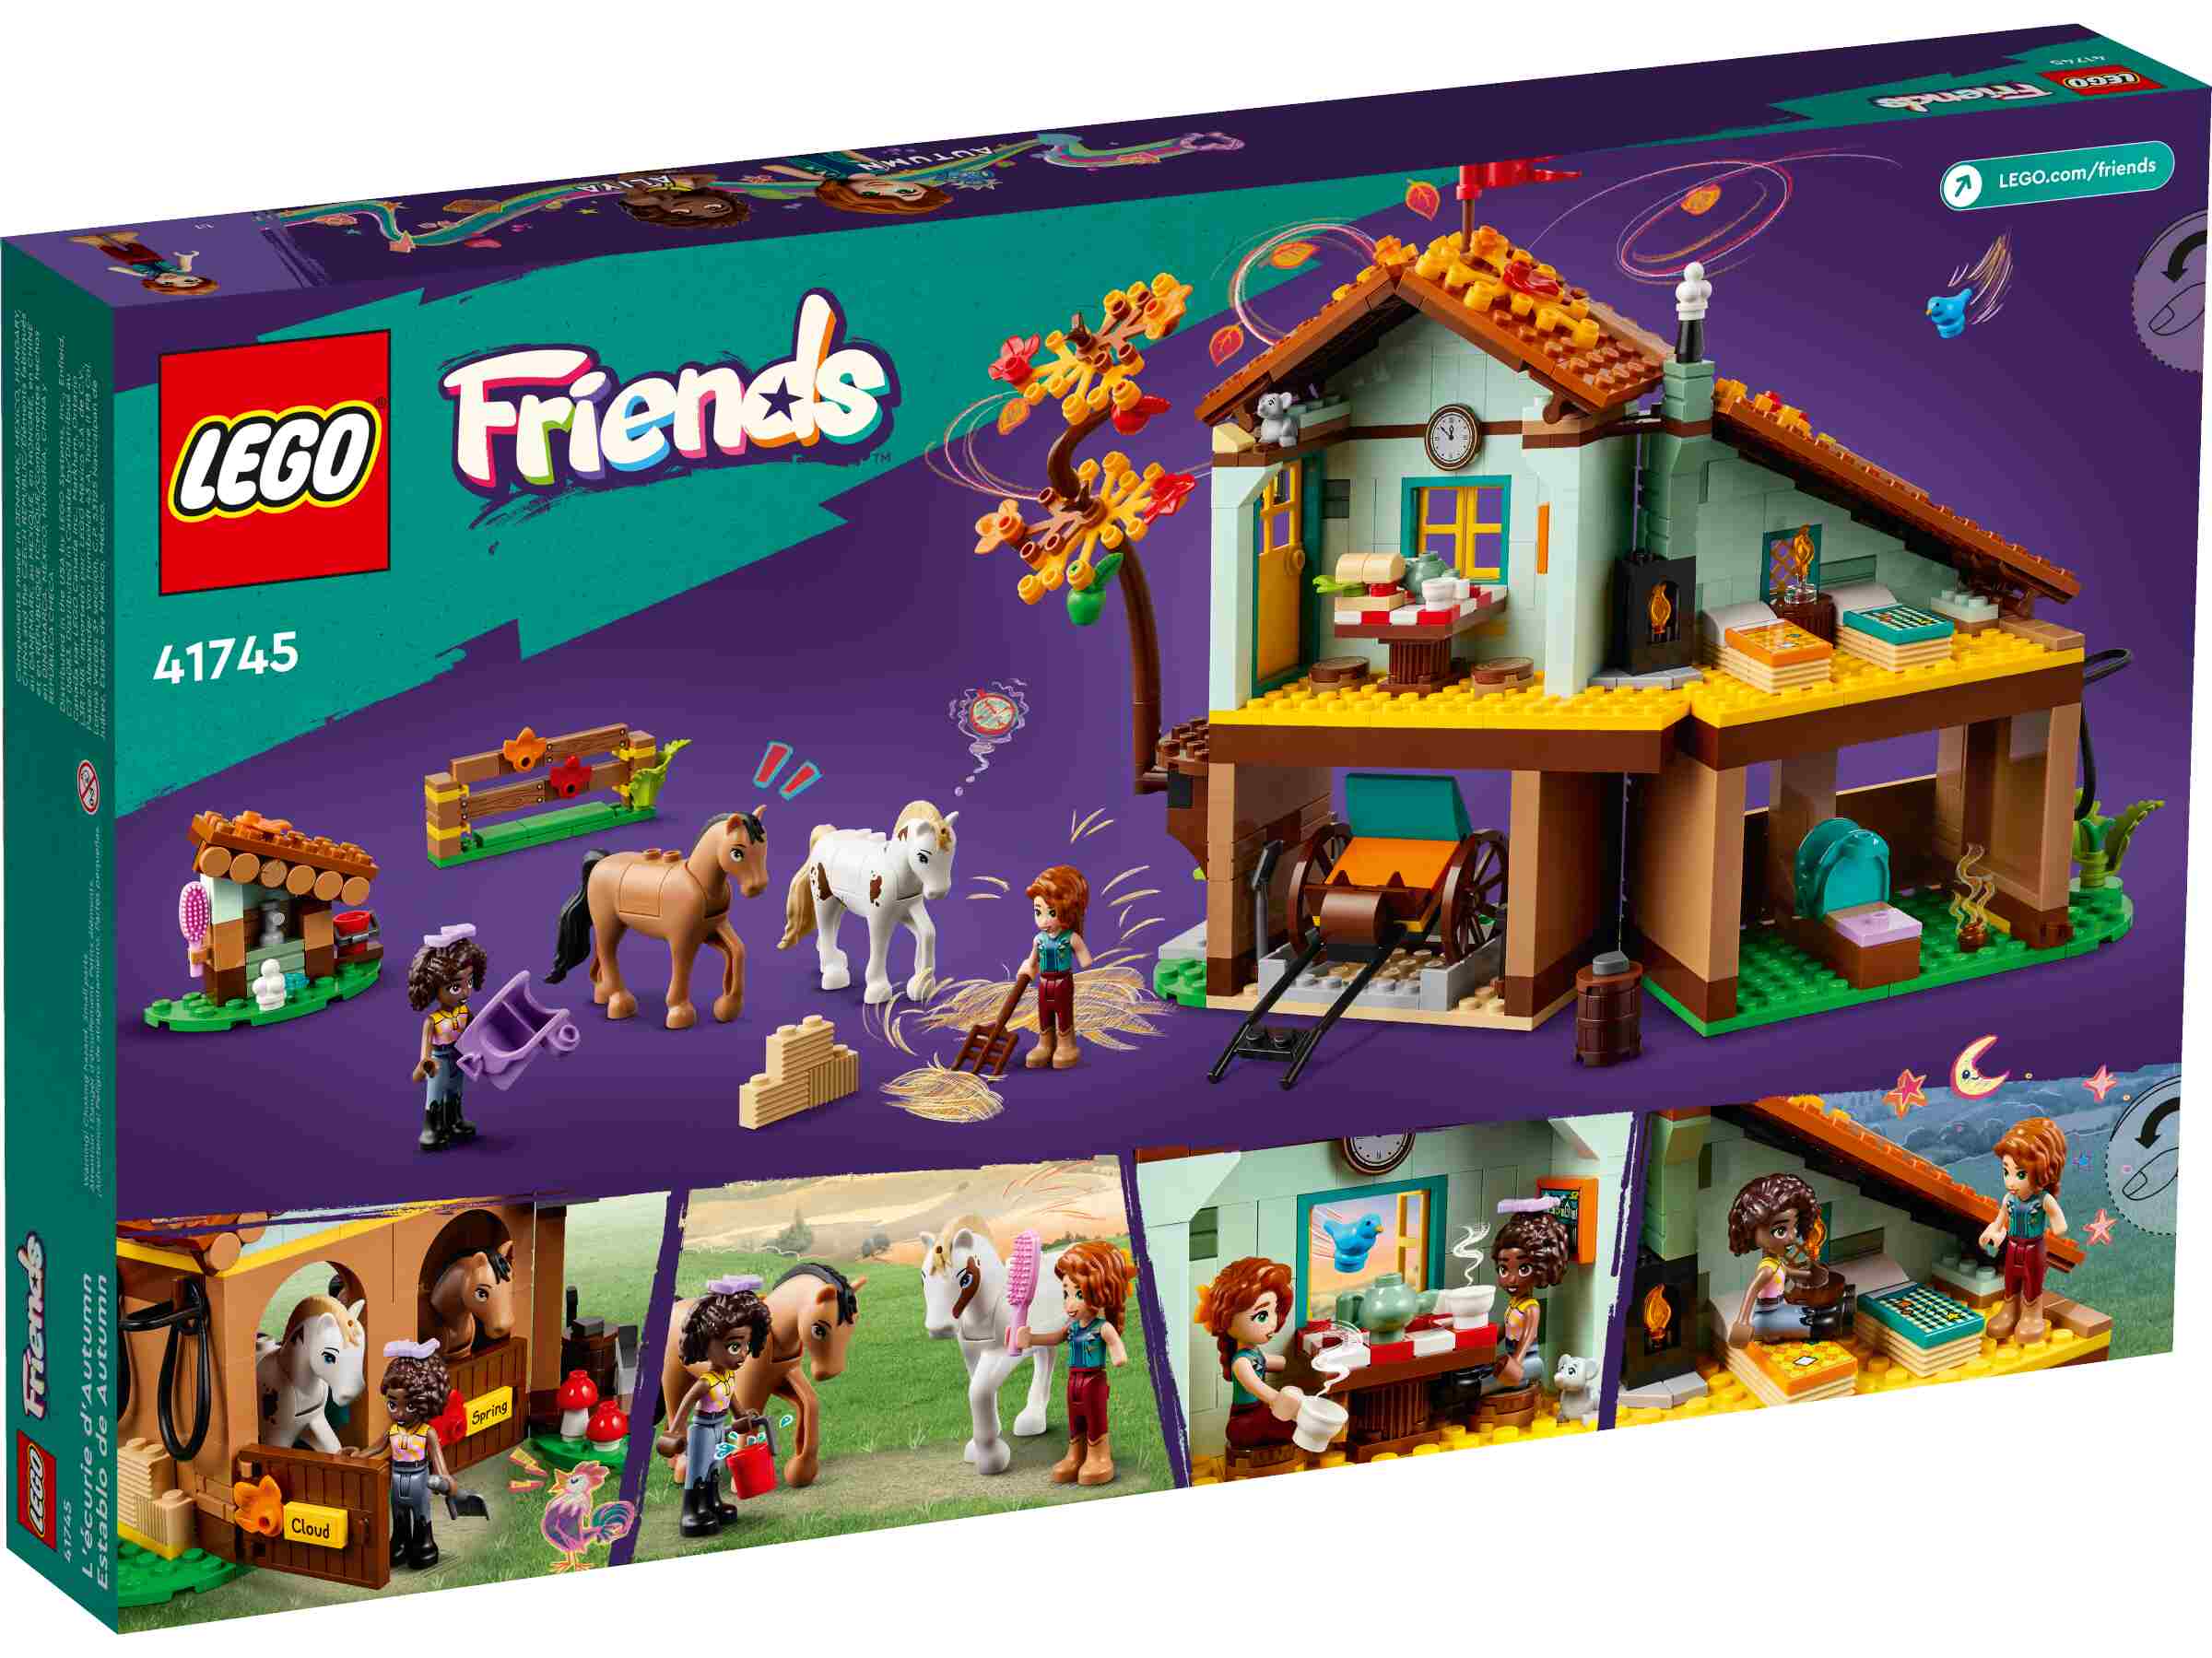 LEGO 41745 Friends Autumns Reitstall, 2 Spielfiguren, 2 Pferde